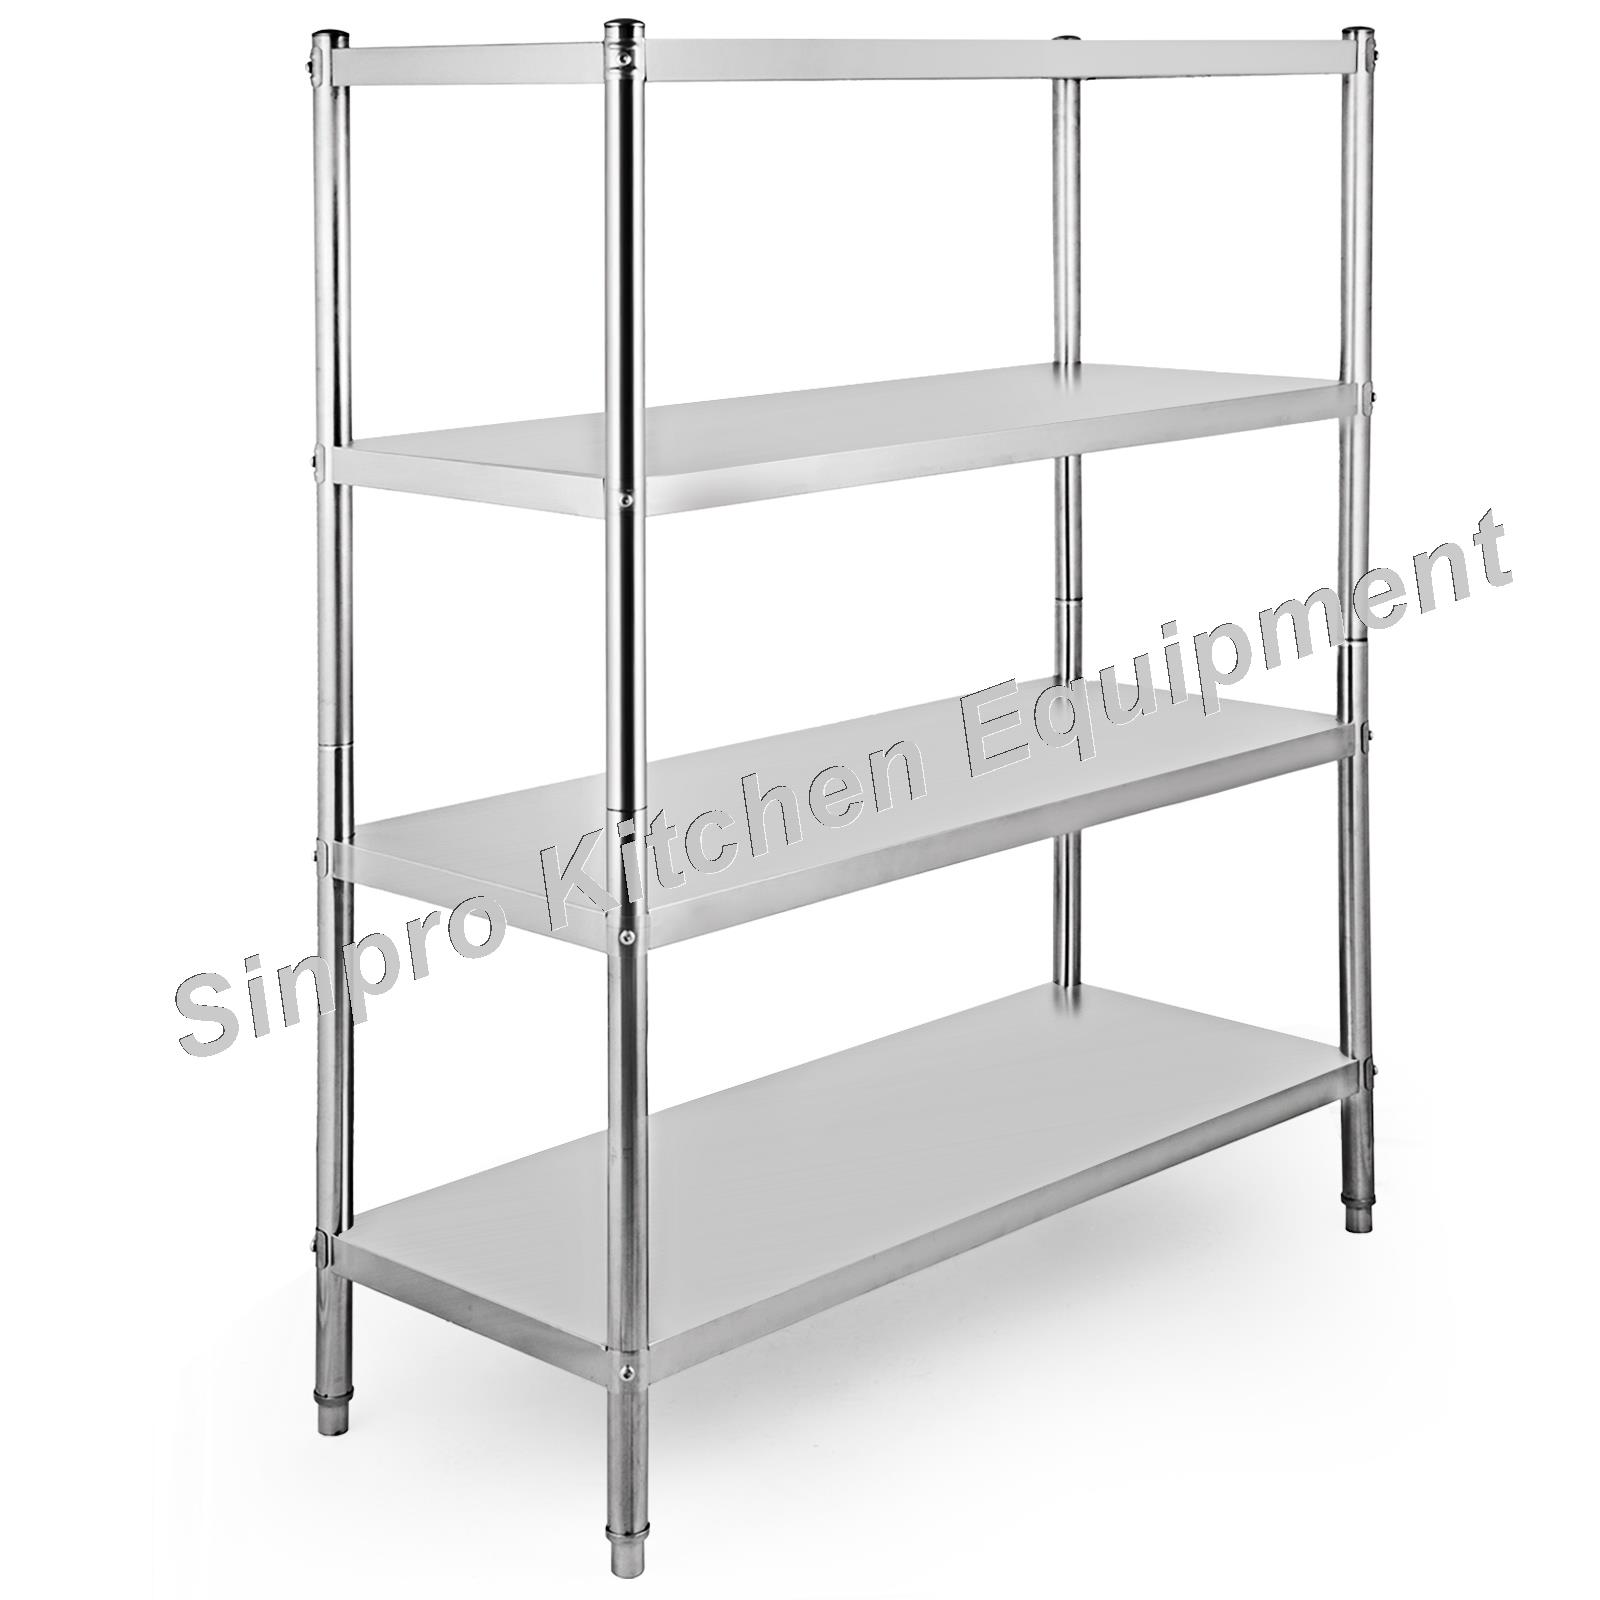 Stainless Steel Shelf gastronomic Heavy Duty Shelf Stainless Steel Rack Kitchen Shelf 120x40x150cm